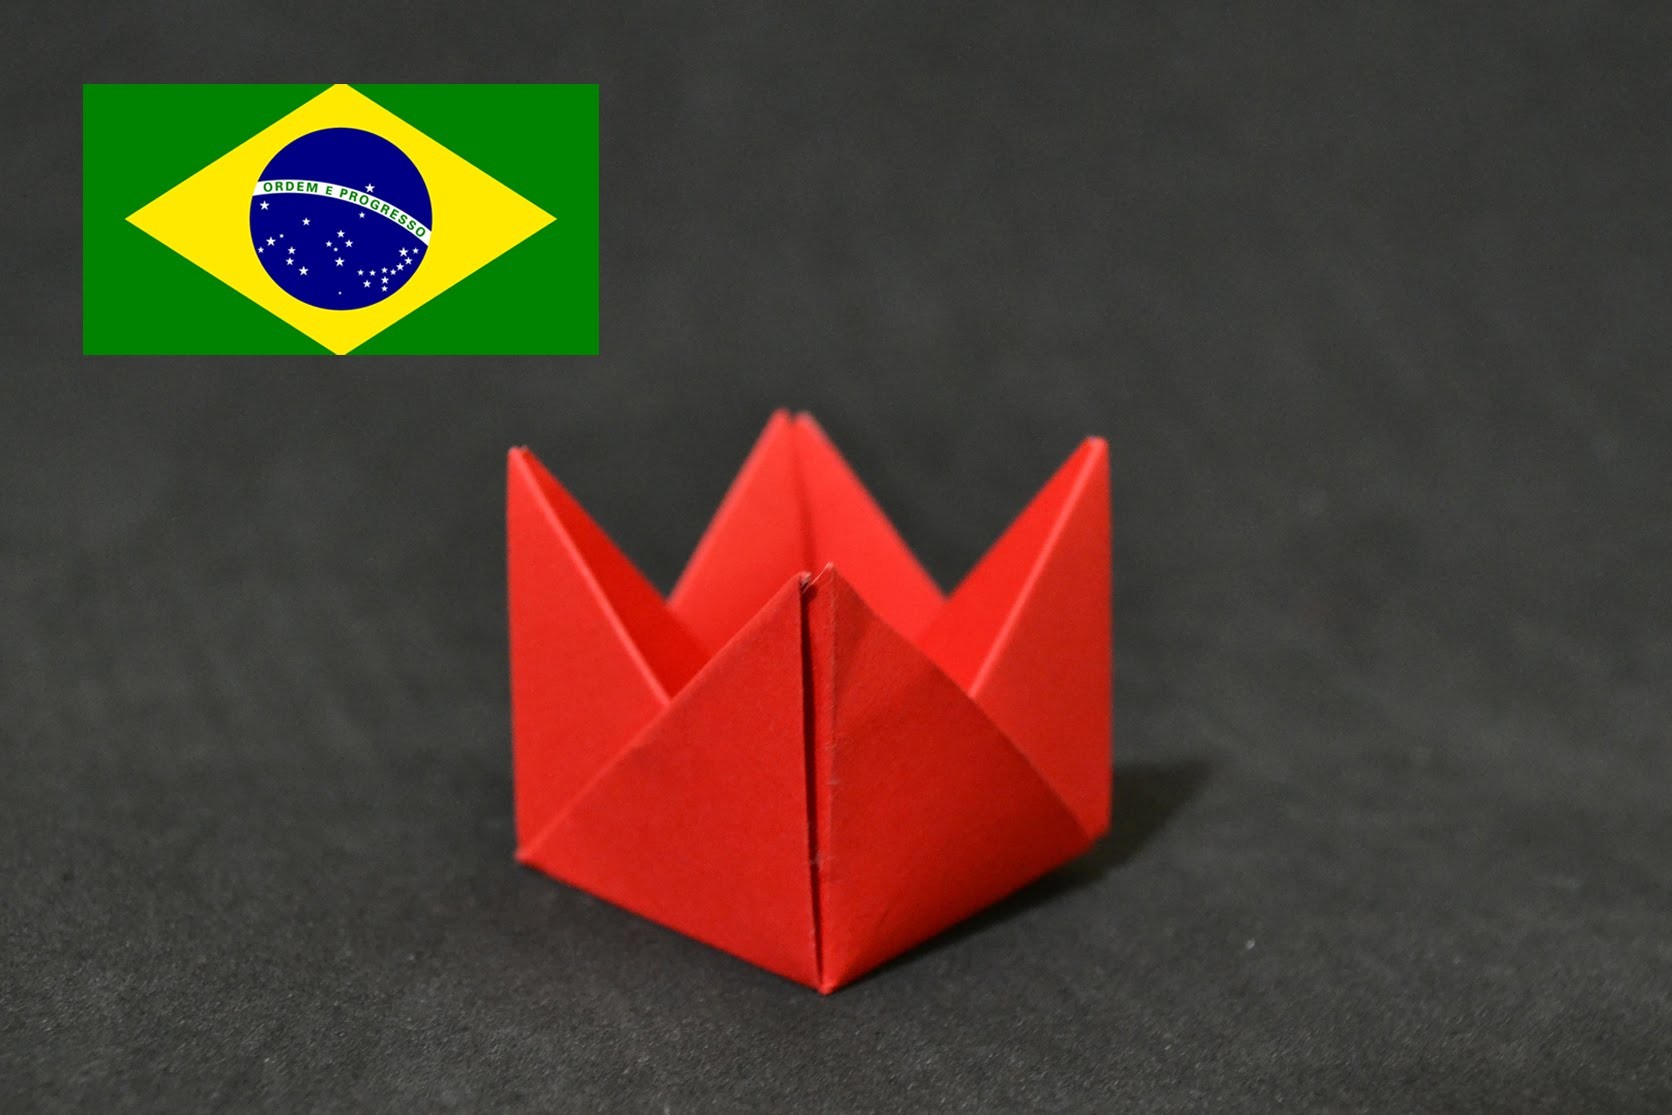 Origami: Forminha para doces - Tutorial com voz PT BR